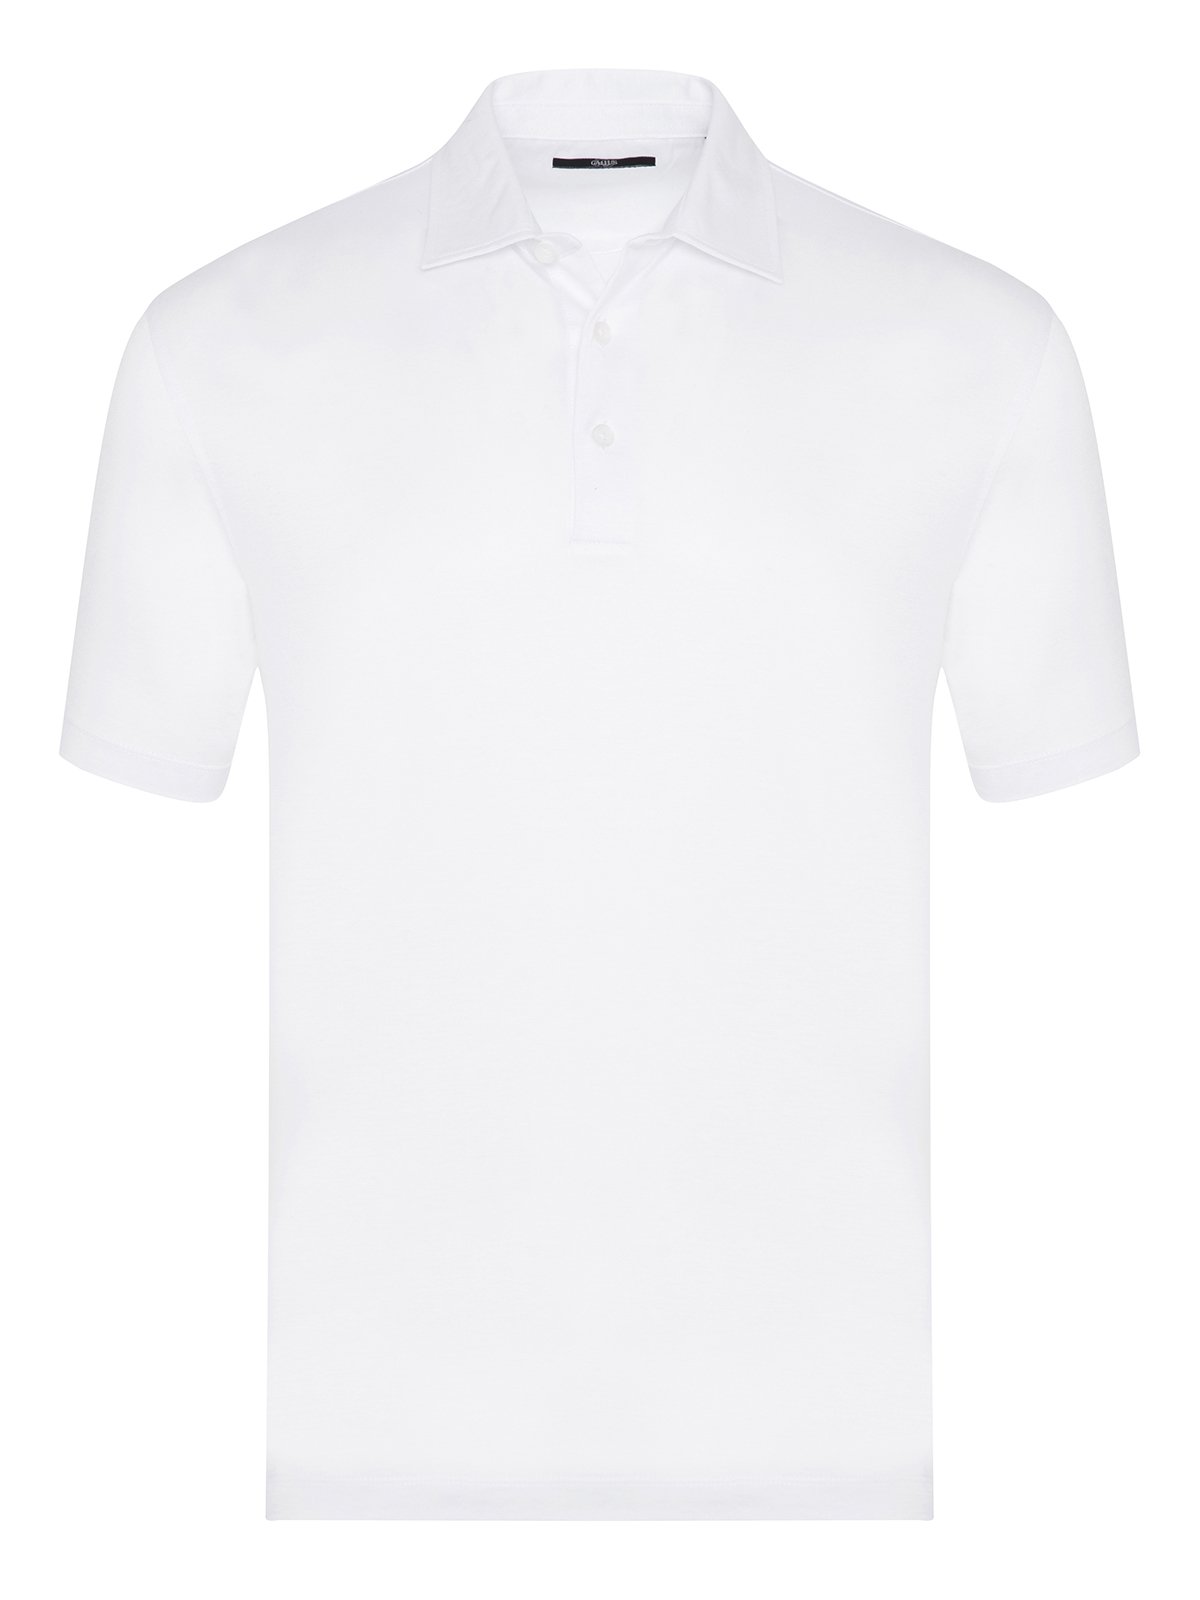 Gallus - Gallus Beyaz Flodi Scozia Gömlek Yaka Regular Fit Merserize Tişört